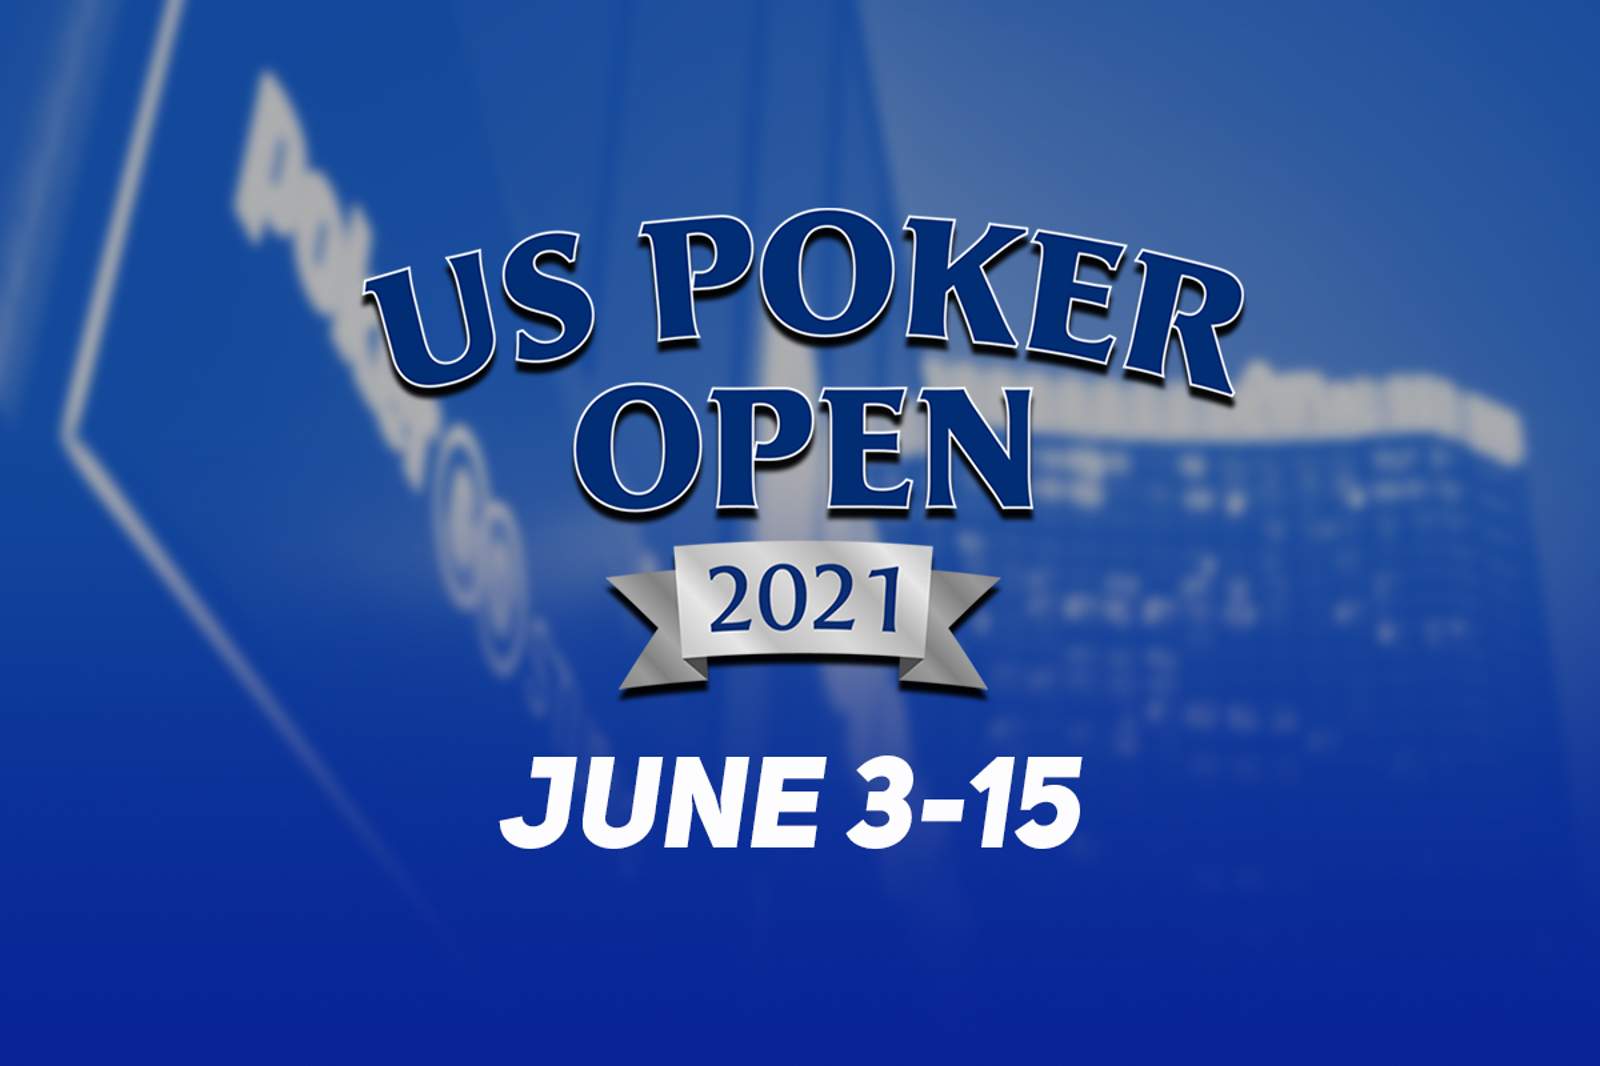 U.S. Poker Open 2021 Schedule: June 3-15